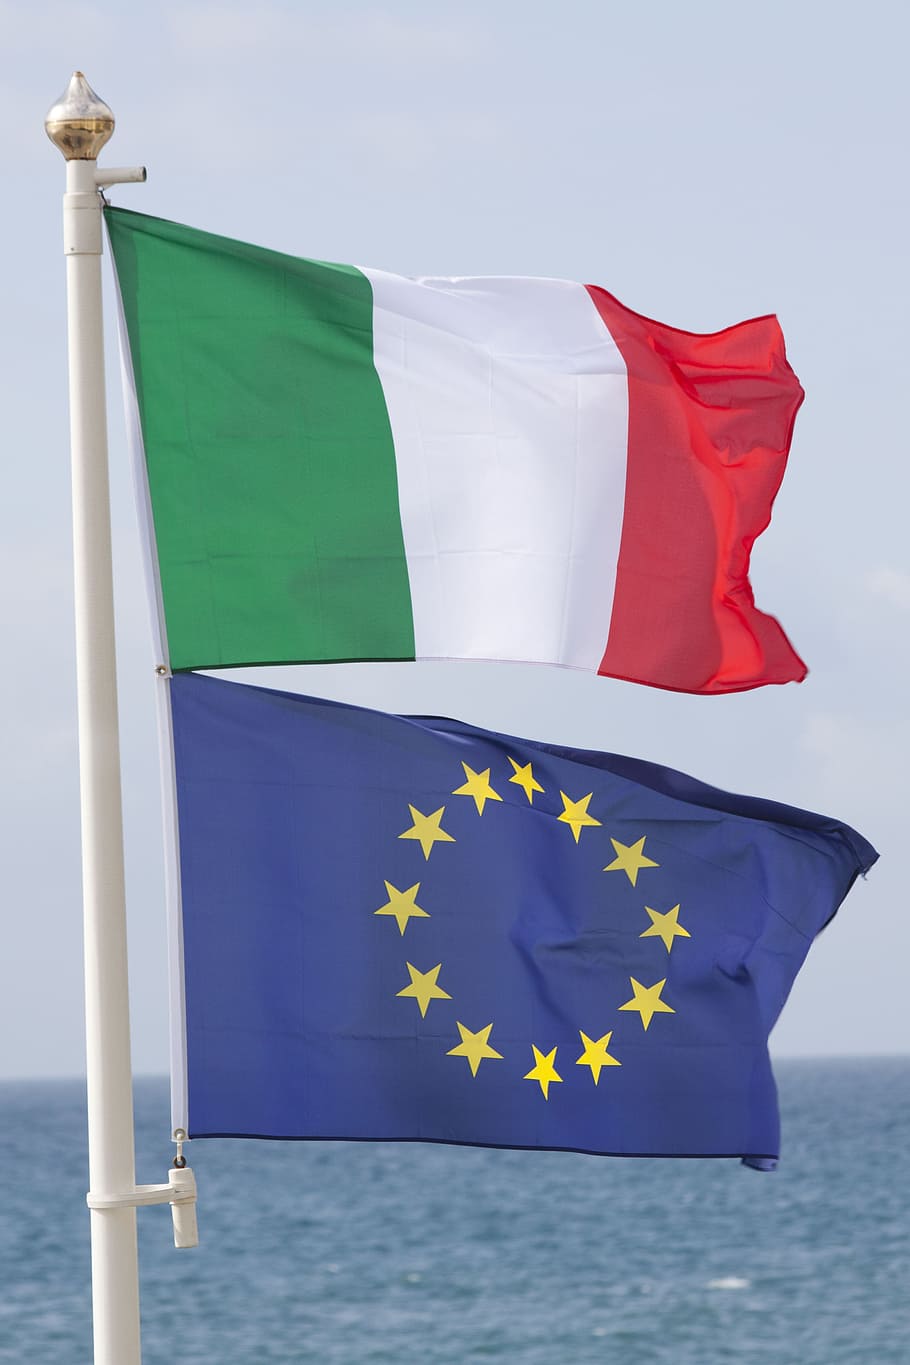 Italia, Europa, bandera, italiano, europeo, unión, país, identidad, objeto, ola